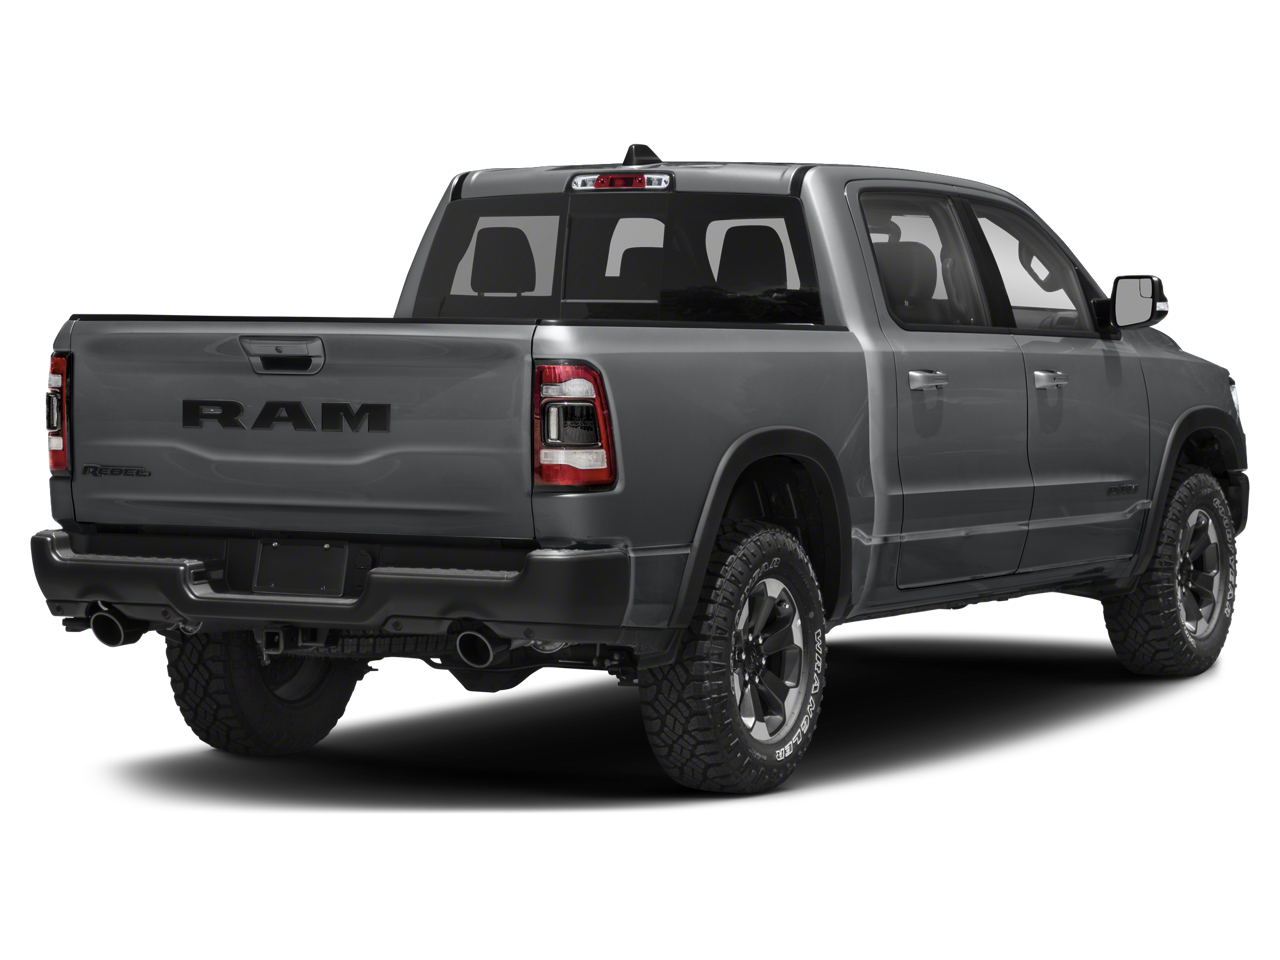 Used 2019 RAM Ram 1500 Pickup Rebel with VIN 1C6SRFLT7KN563681 for sale in Mankato, Minnesota